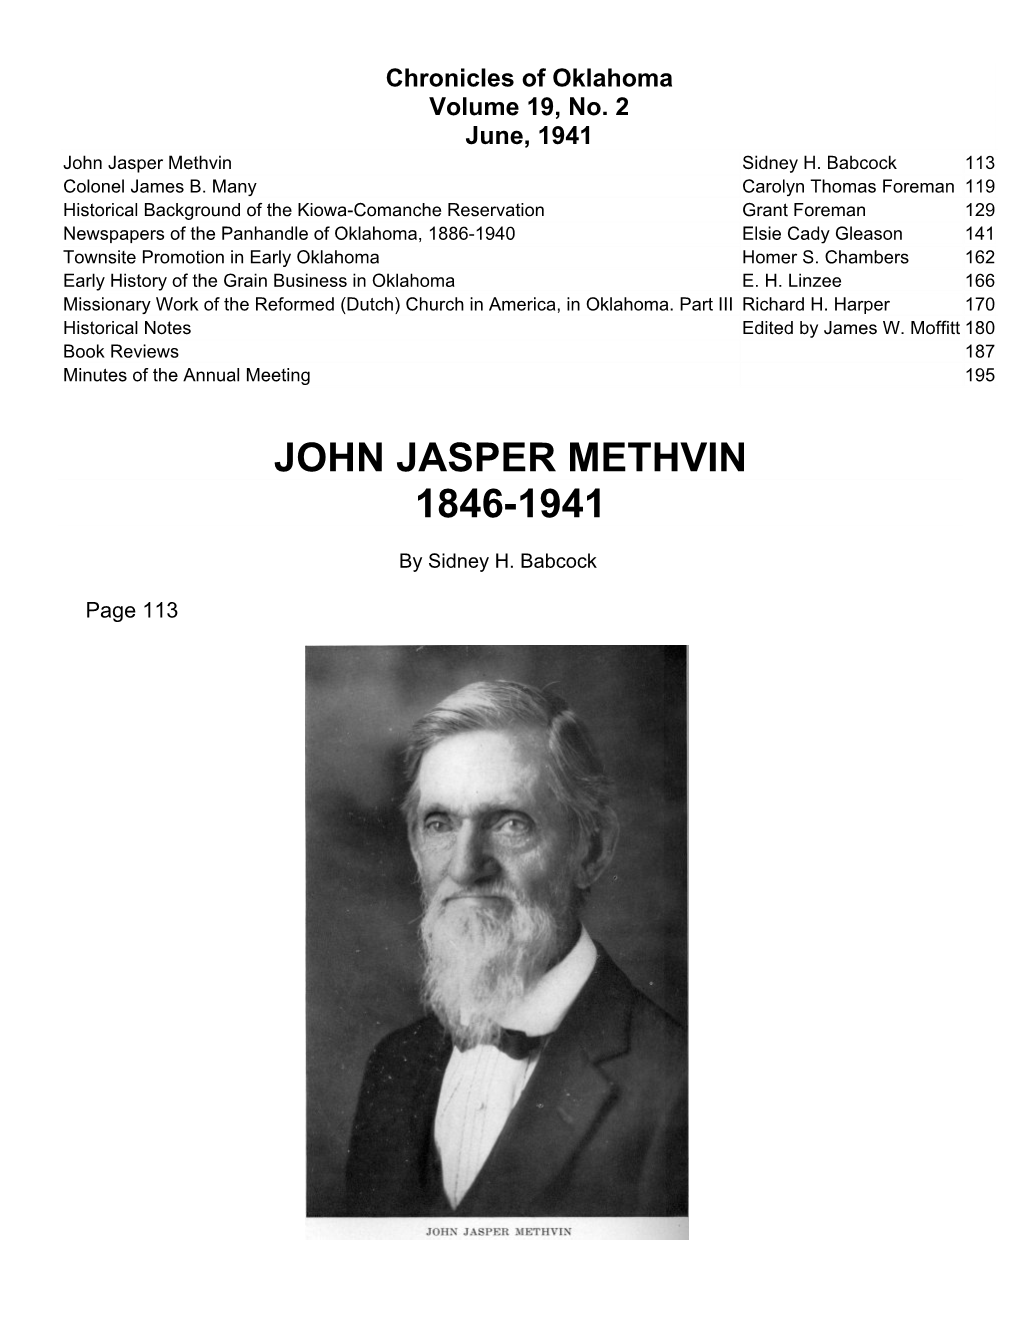 John Jasper Methvin 1846-1941